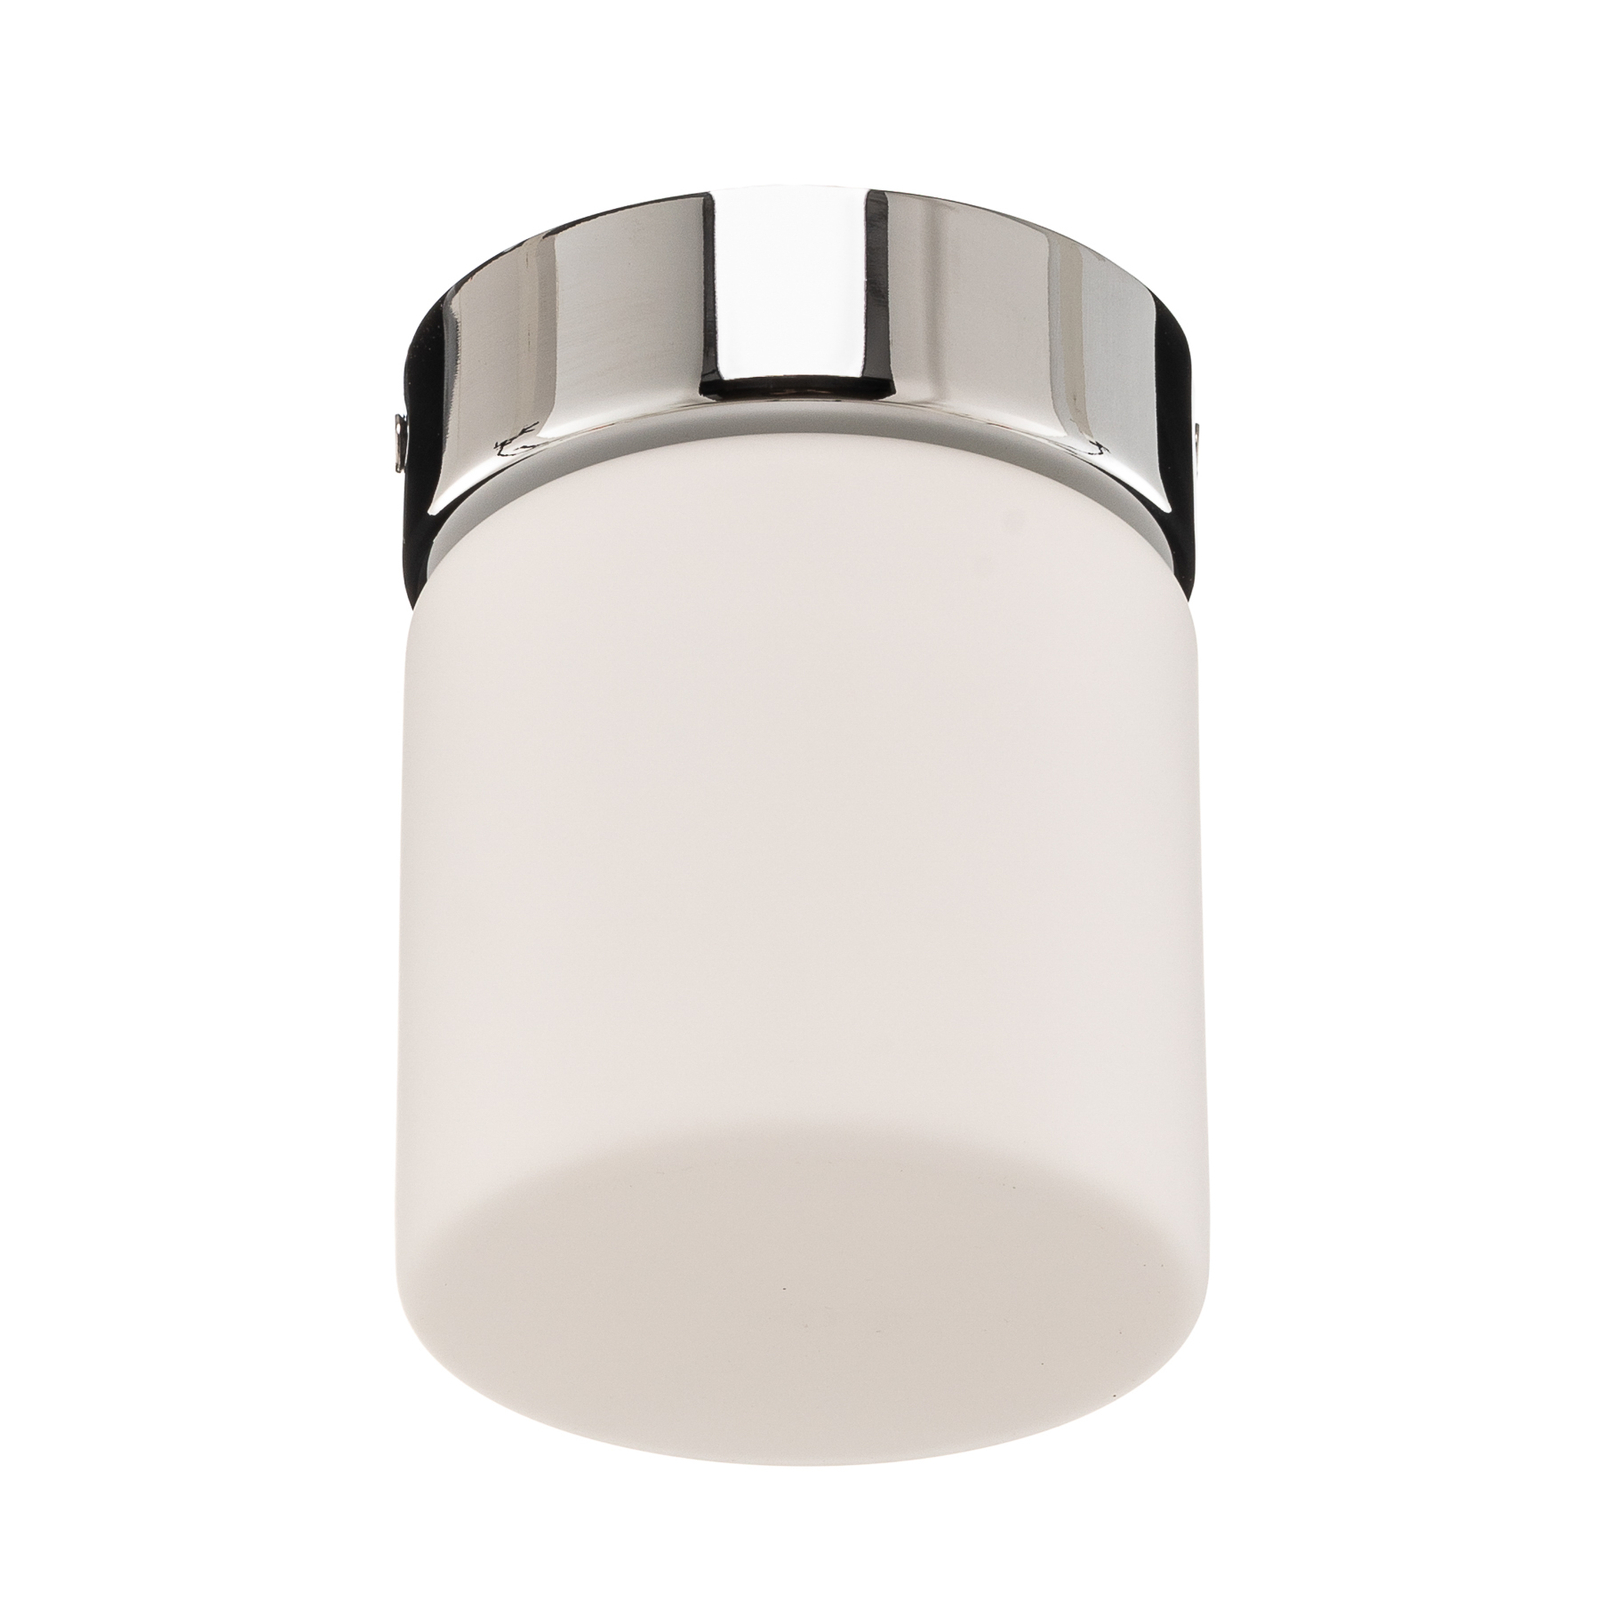 Helestra Keto LED ceiling light, cylinder, chrome